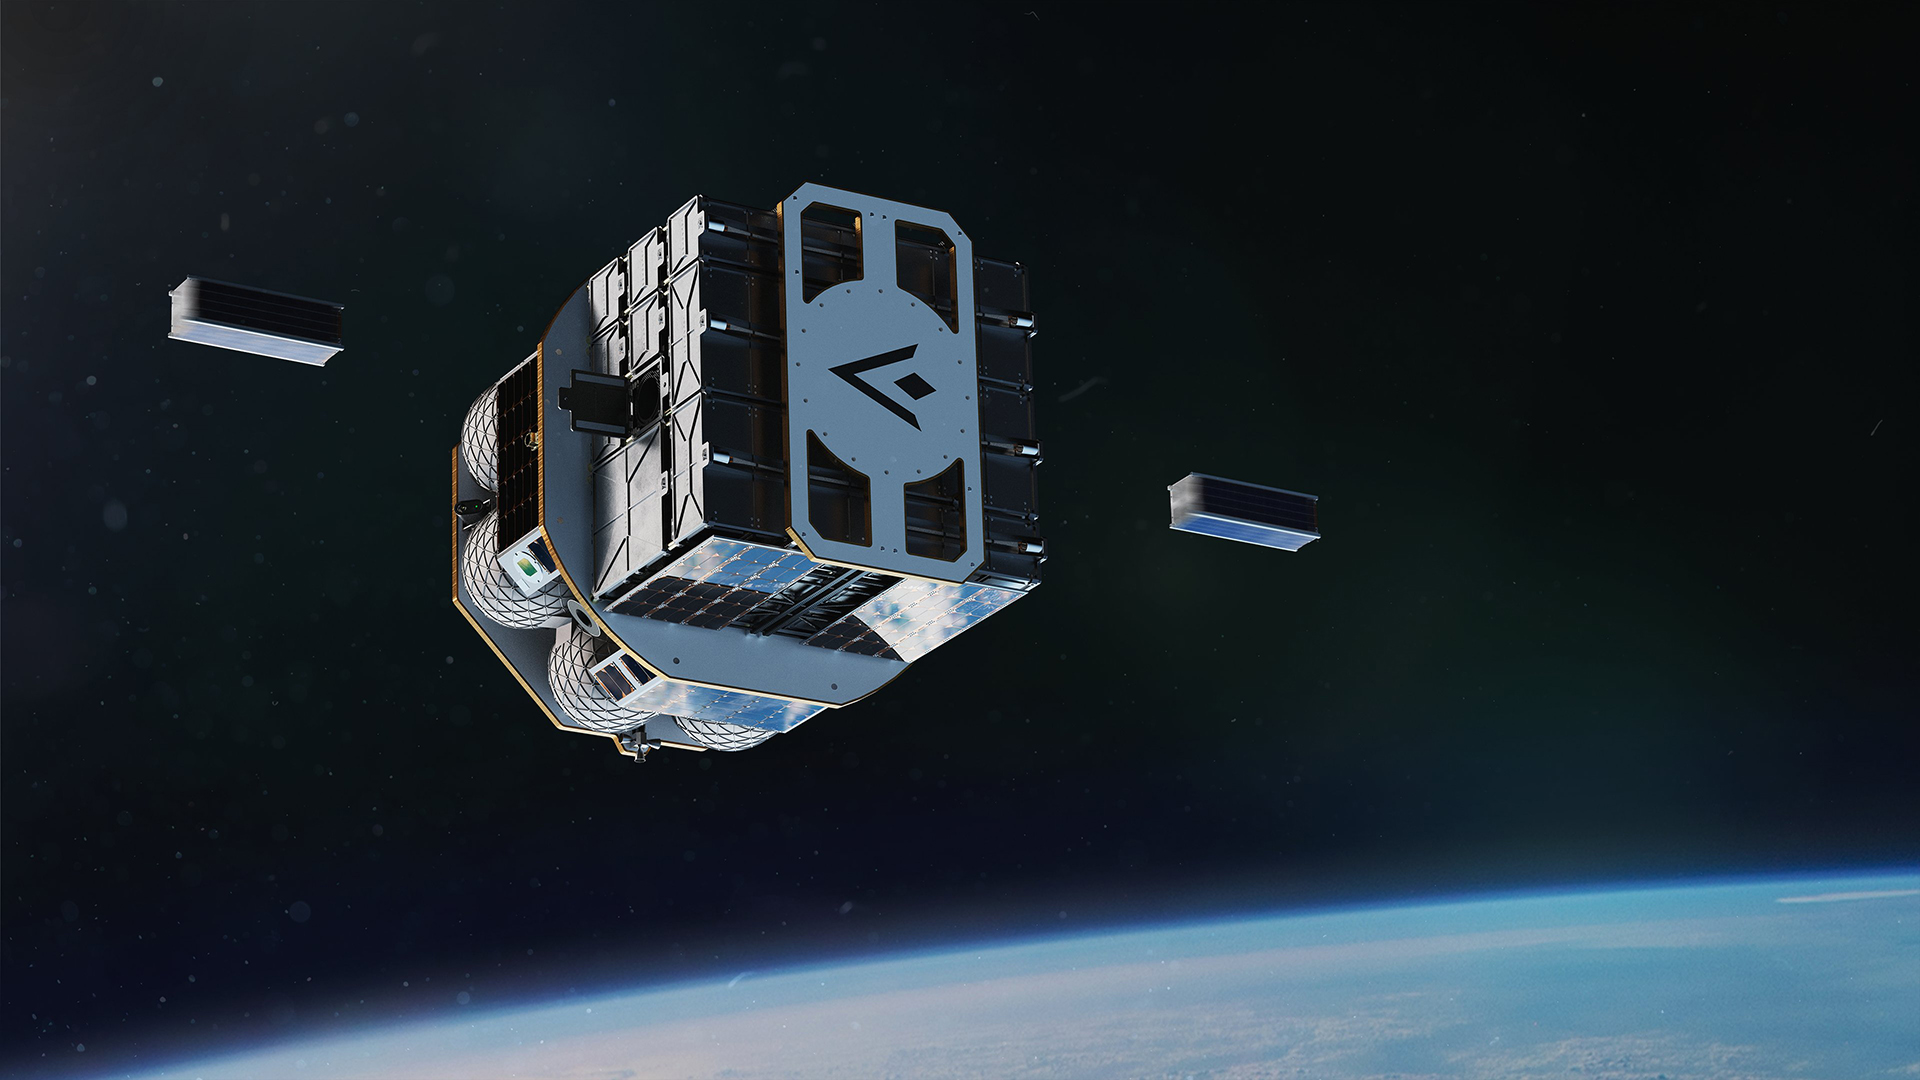 Rappresentazione grafica di Orbiter, l'OTV di Launcher